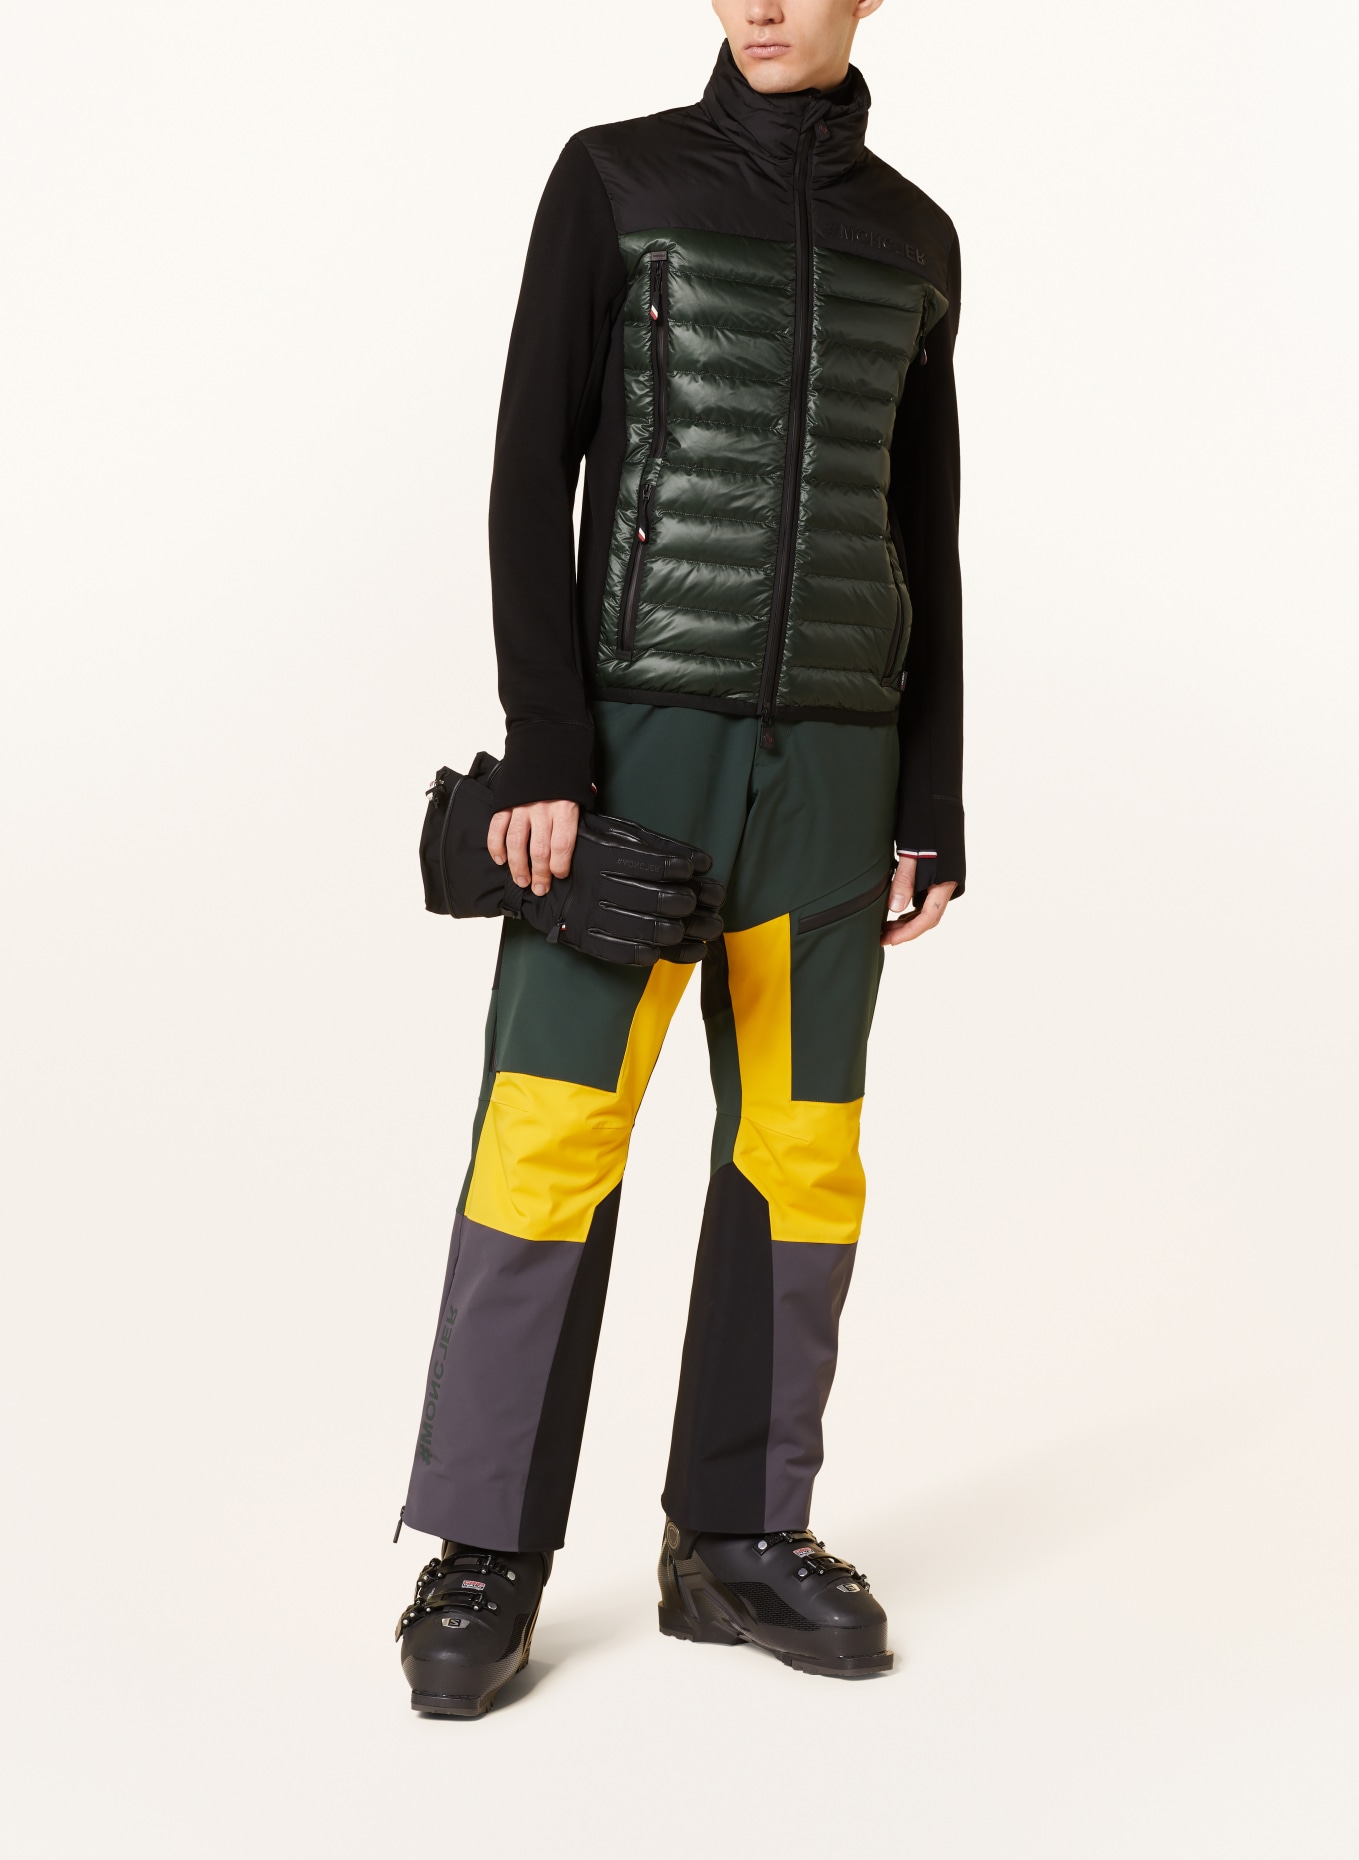 MONCLER GRENOBLE Hybrid sweat jacket, Color: BLACK/ DARK GREEN (Image 2)